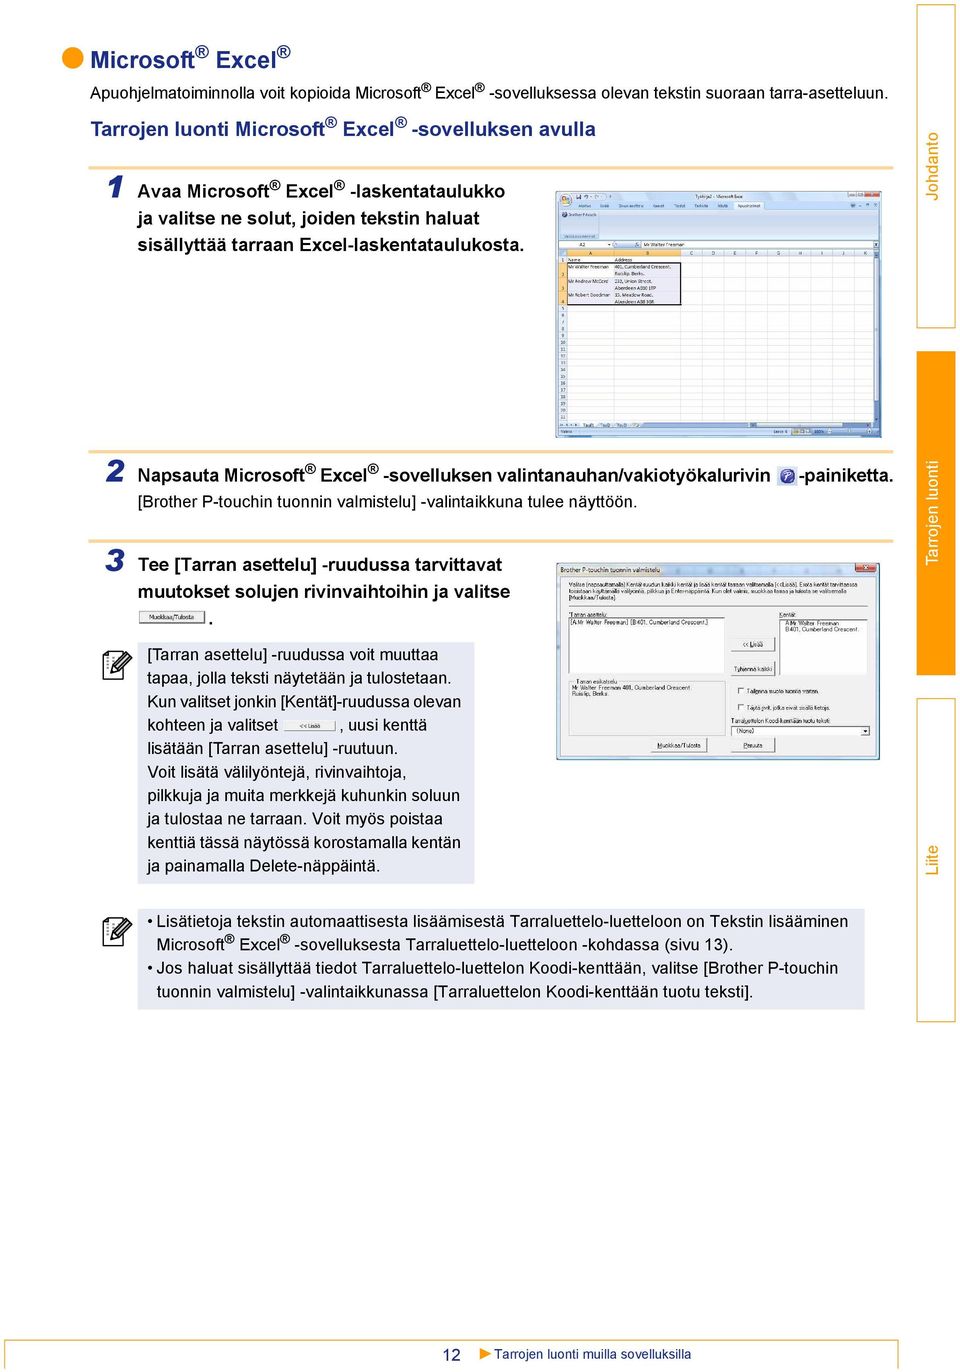 3 2 Napsauta Microsoft Excel -sovelluksen valintanauhan/vakiotyökalurivin -painiketta. [Brother P-touchin tuonnin valmistelu] -valintaikkuna tulee näyttöön.